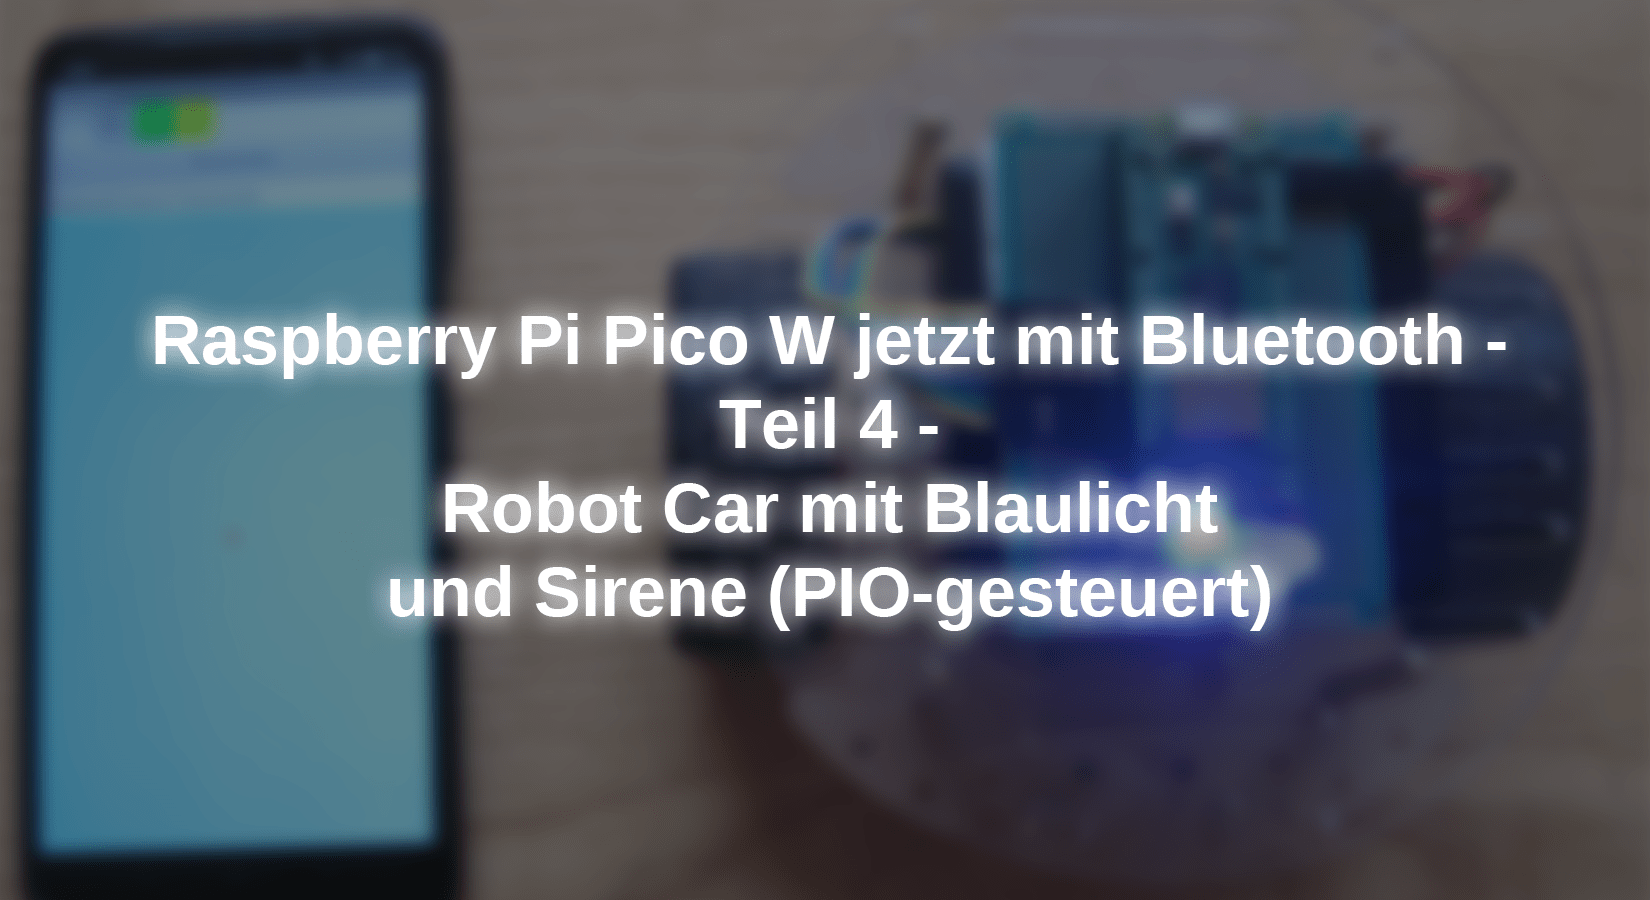 http://www.az-delivery.de/cdn/shop/articles/raspberry-pi-pico-w-jetzt-mit-bluetooth-teil-4-robot-car-mit-blaulicht-und-sirene-pio-gesteuert-522846.png?v=1697027637